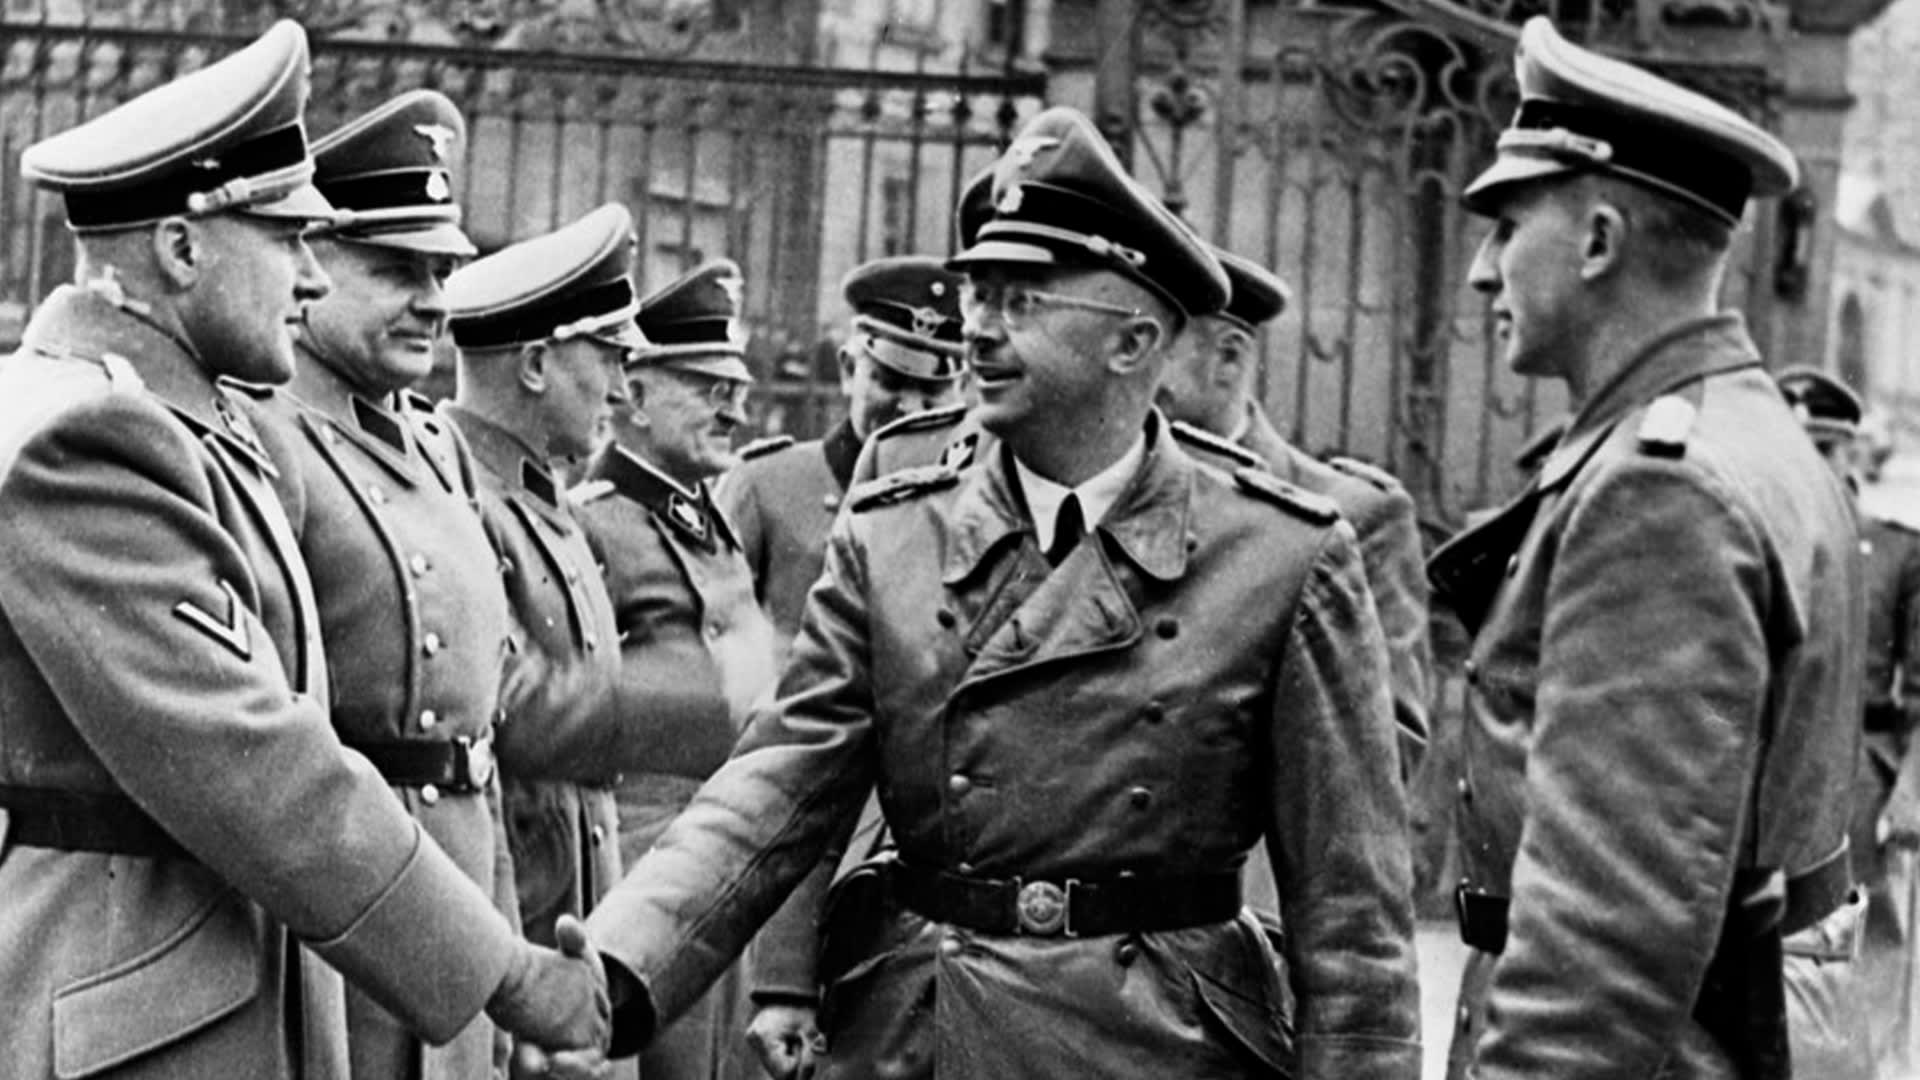 Zastupující říšský protektor Reinhard Heydrich (zcela vpravo) žil v permanentním tlaku.